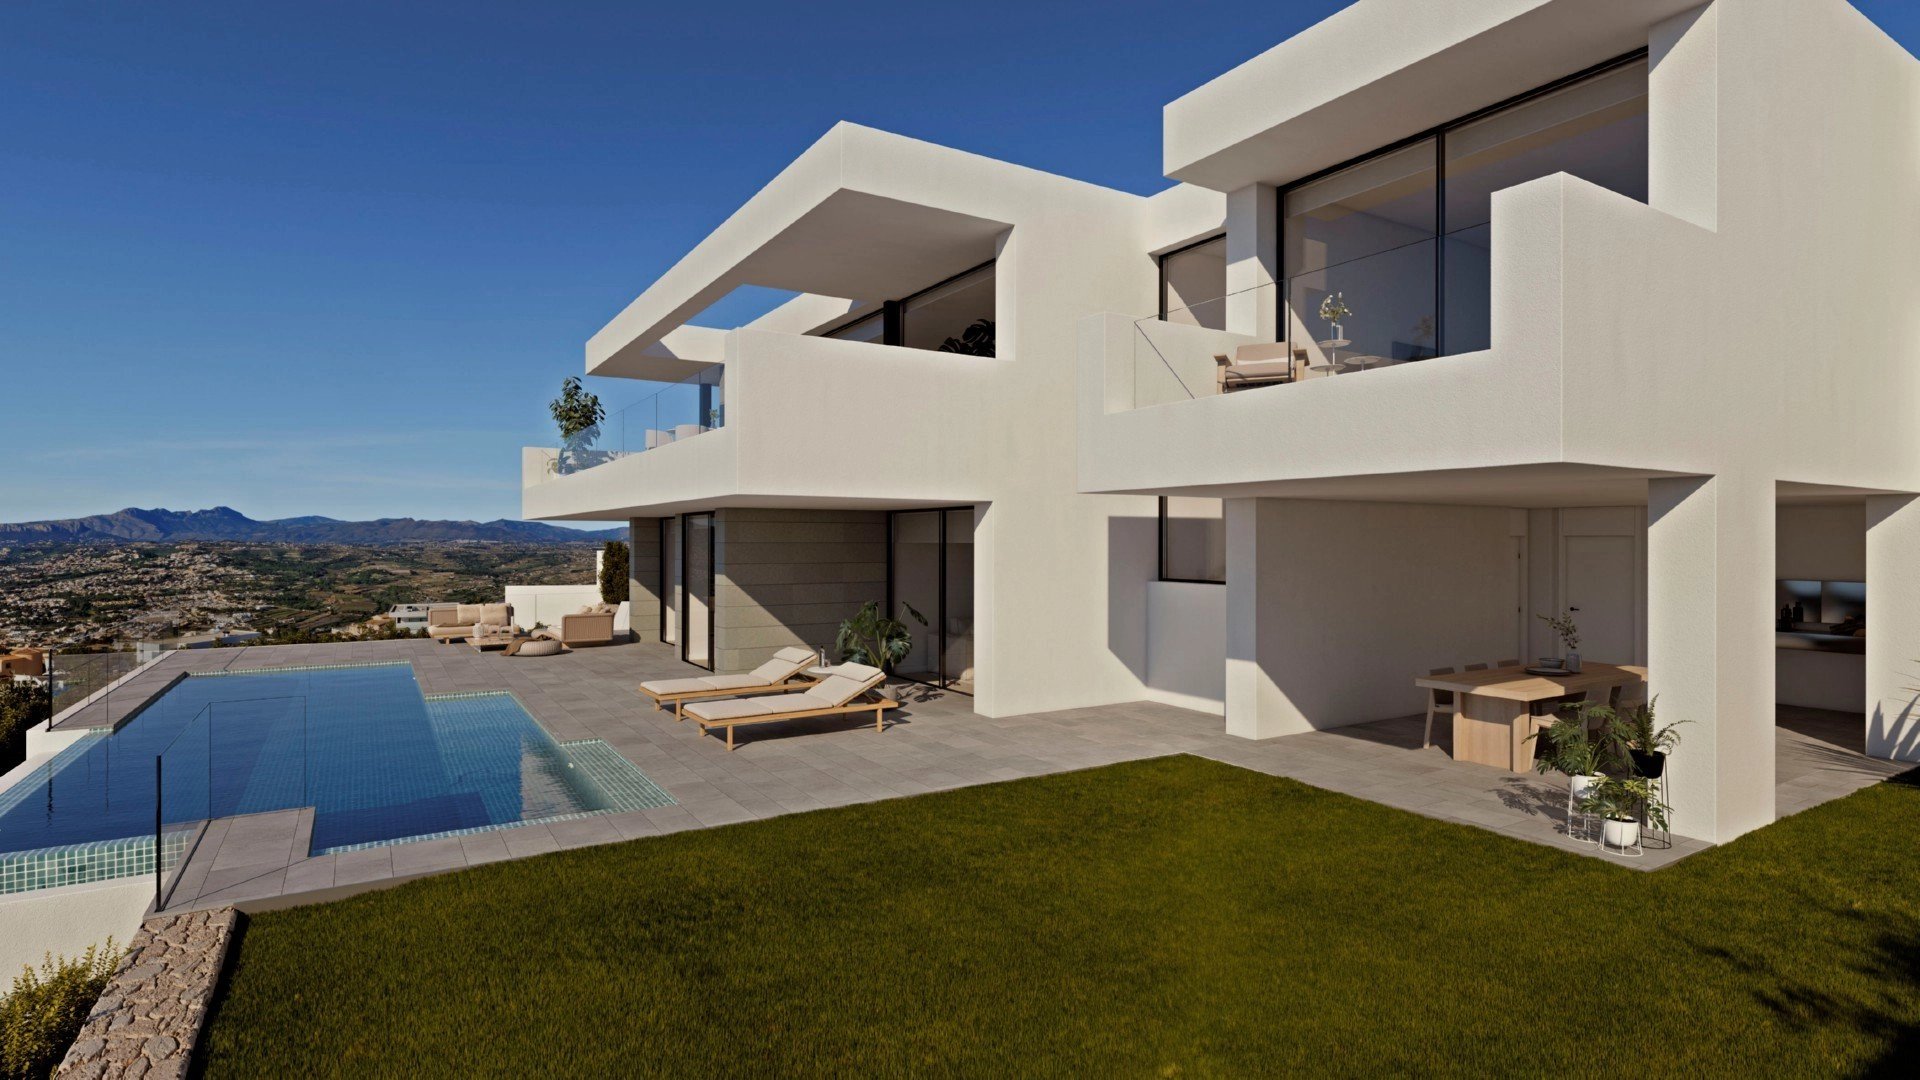 Gran villa moderna de lujo con vista panorámica al mar